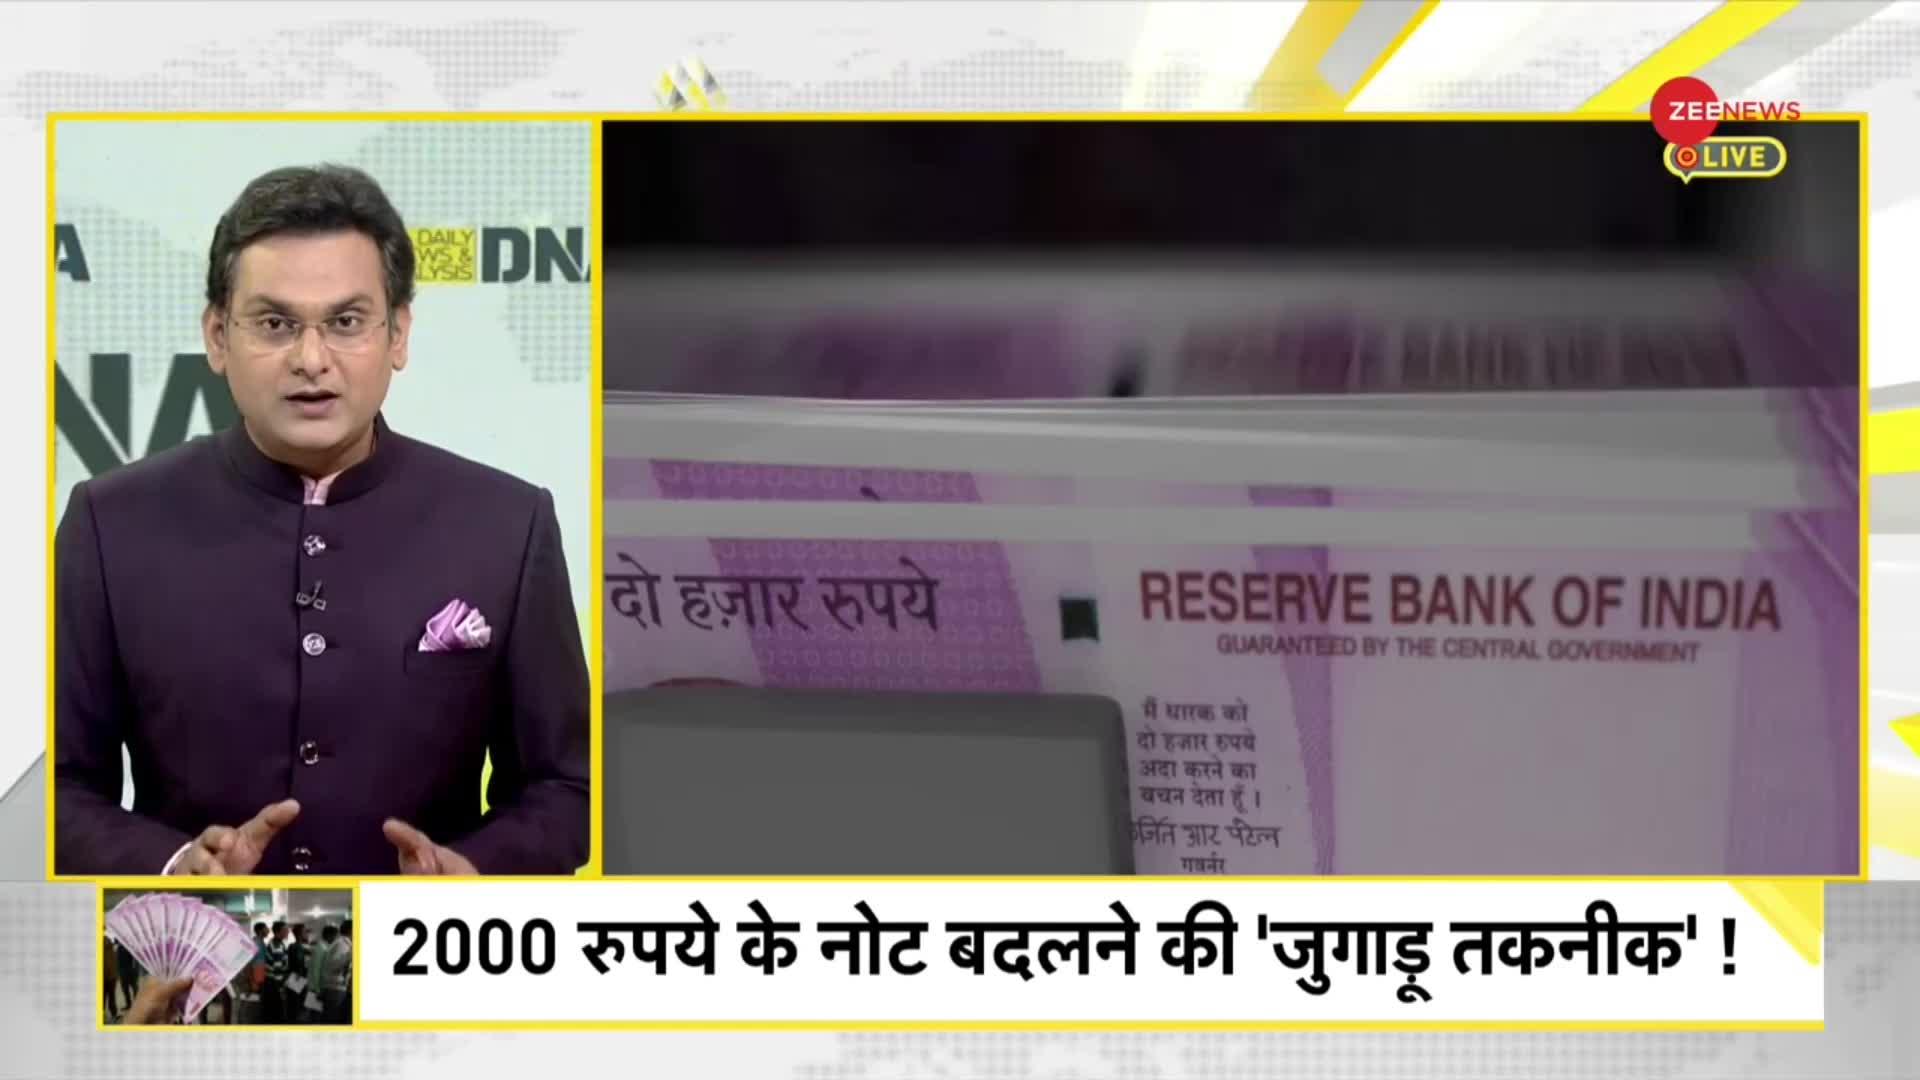 DNA: 2000 रुपये के नोटों की उल्टी गिनती शुरू